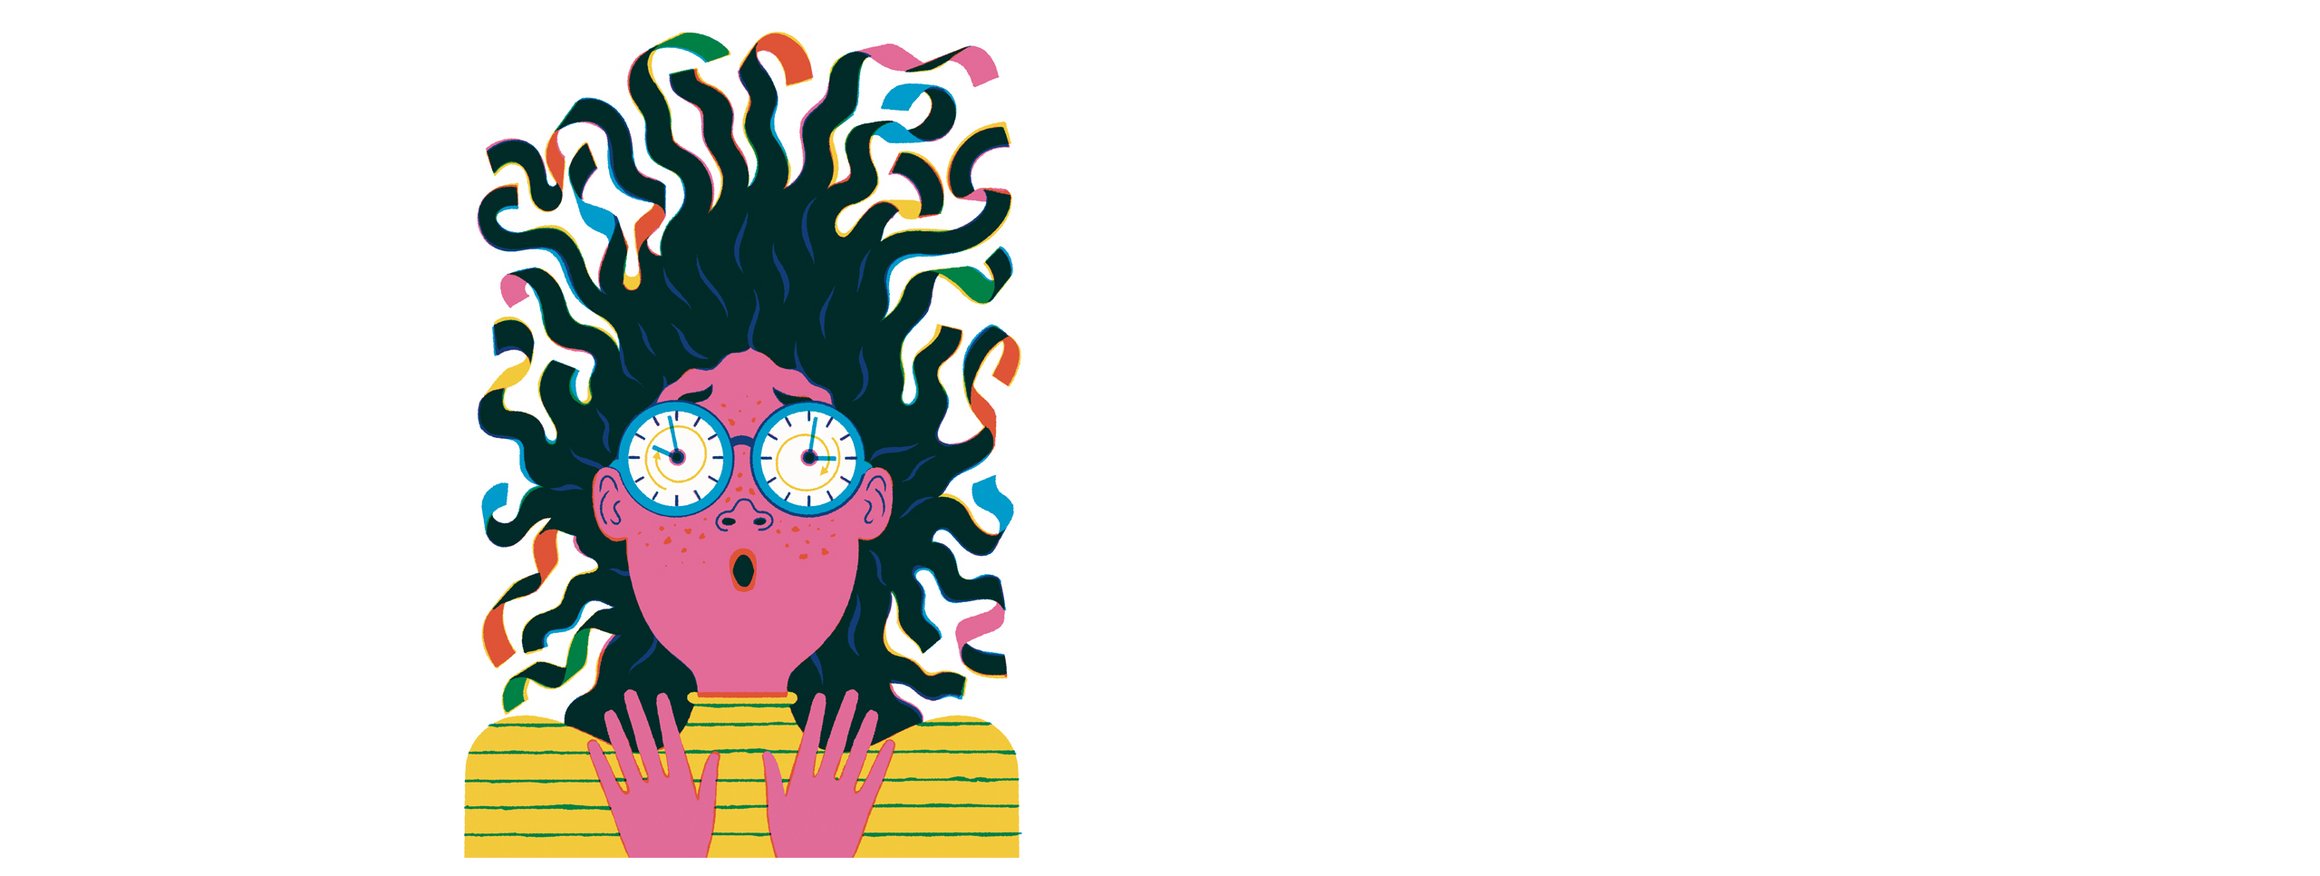 Die Illustration zeigt eine Frau mit wilden Haaren und Uhren als Augen, die aufgeregt schaut